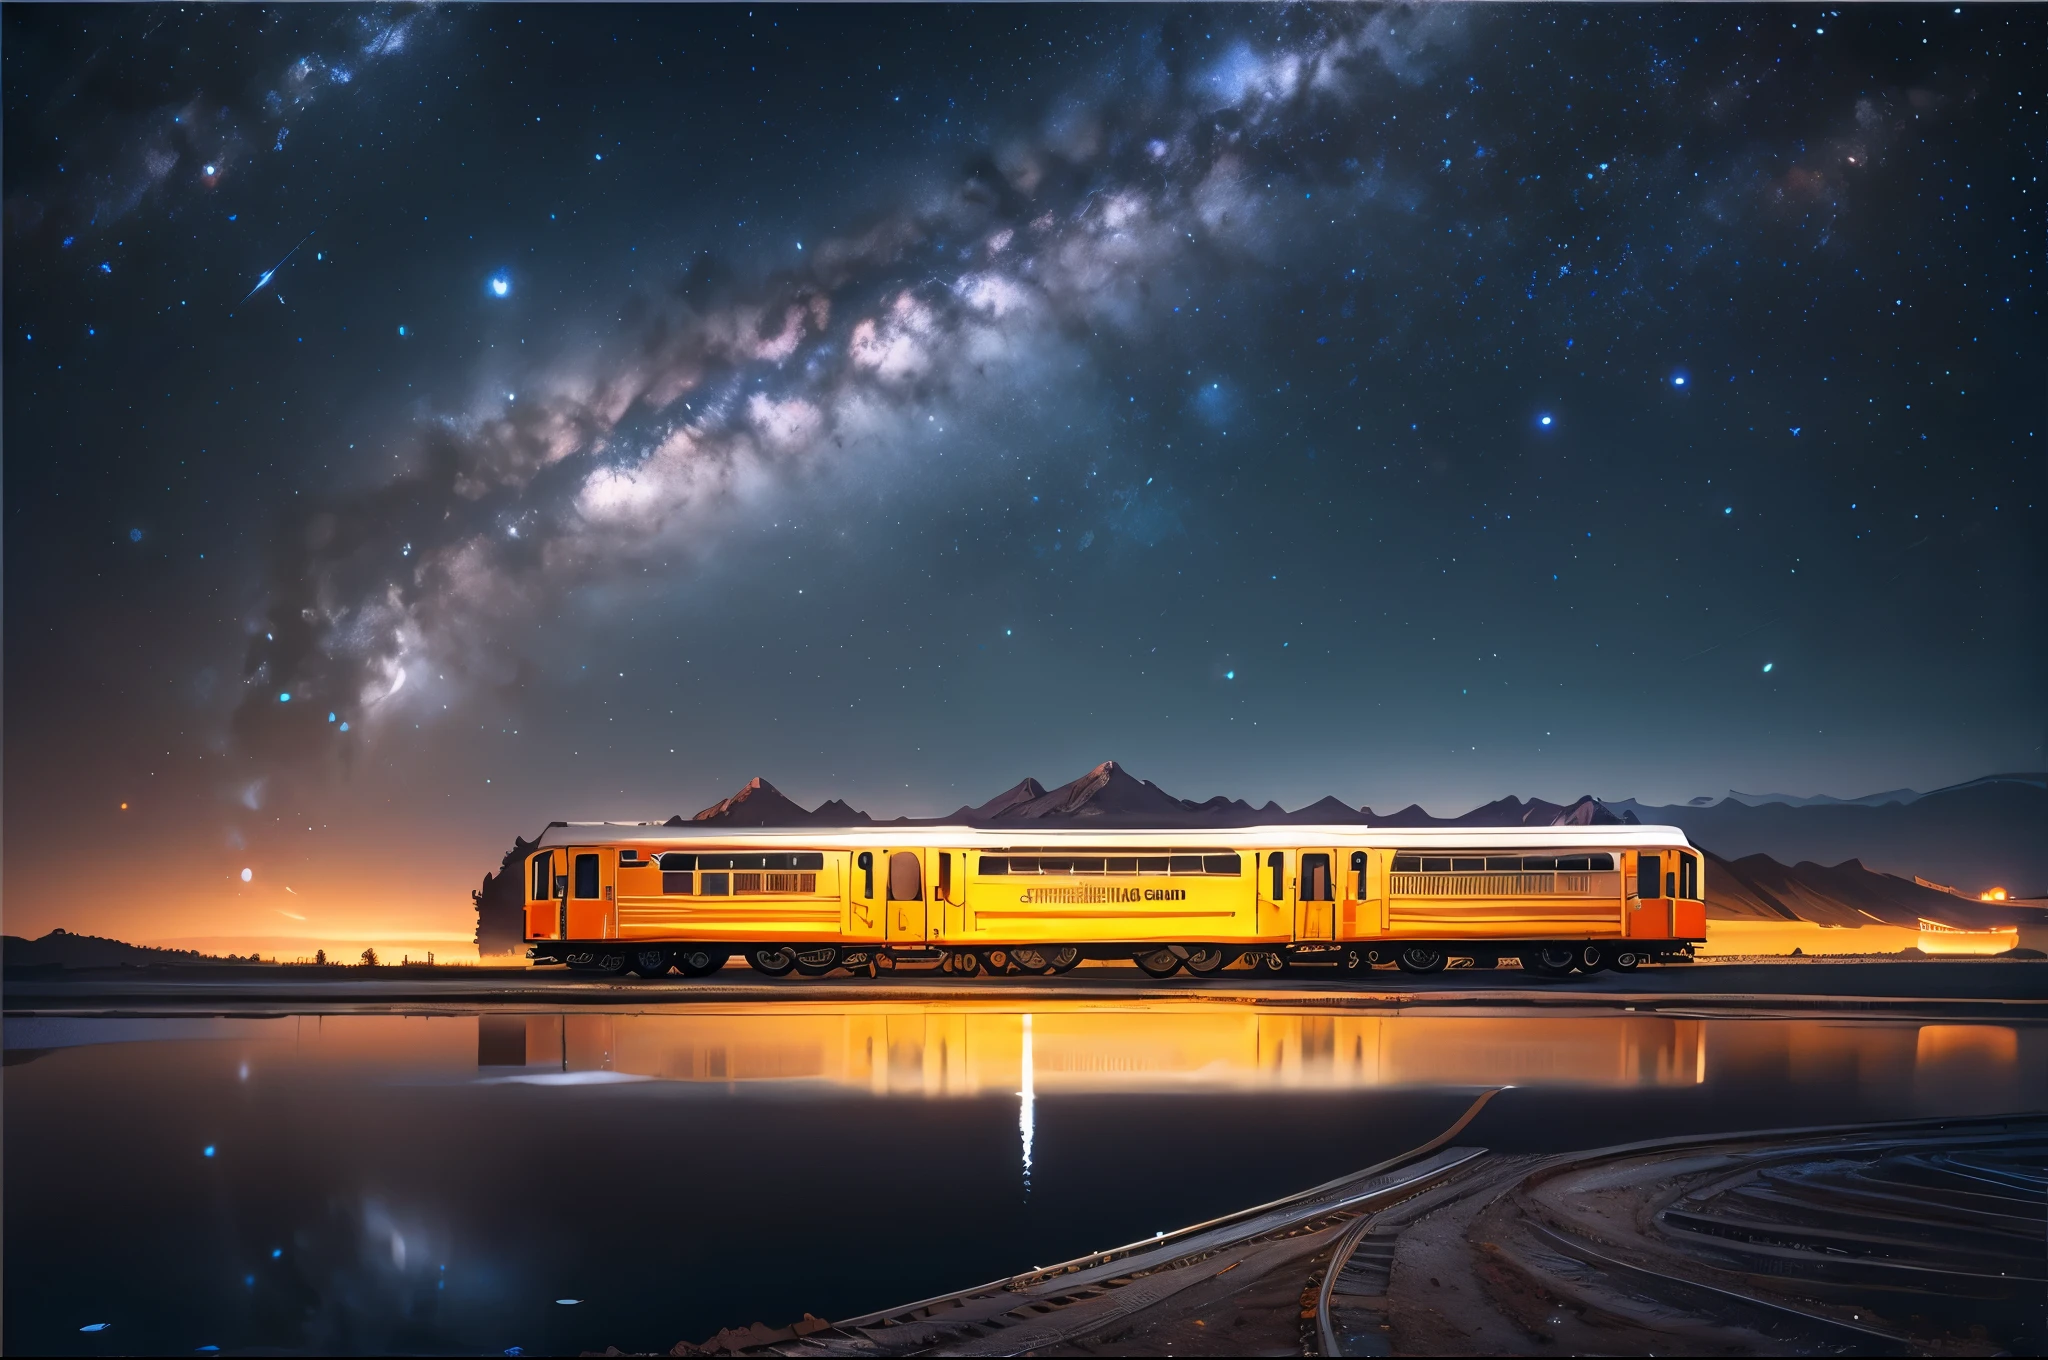 /Eu à noite, o trem viaja no vasto lago salgado, refletindo o trem, a Via Láctea e o céu estrelado. vista frontal e lateral, alta definição, Estilo de fotografia, lente grande angular Ângulo, Composição simétrica, Luz natural, paisagem espetacular
